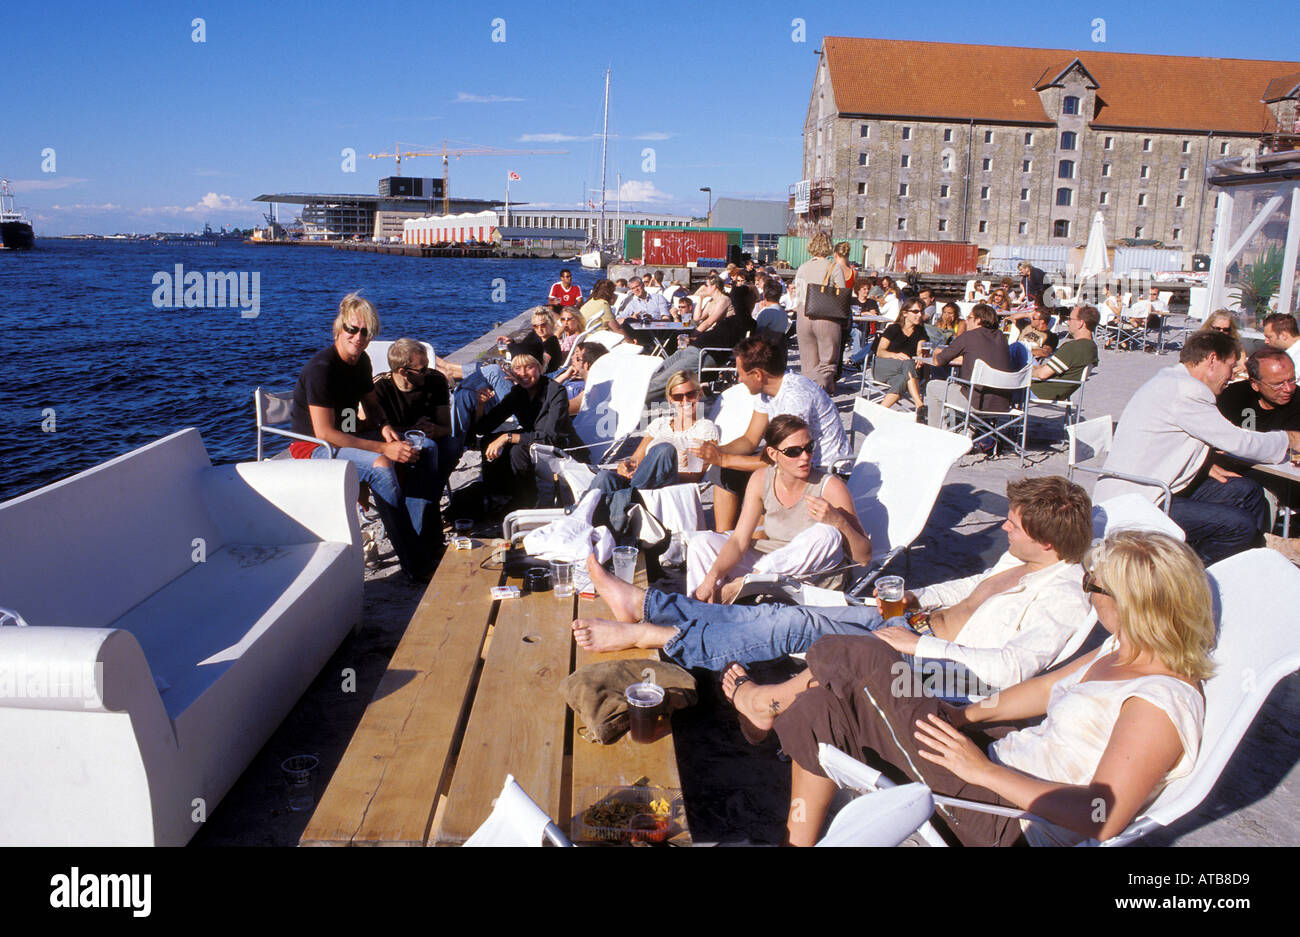 Dänemark Kopenhagen junge Leute sitzen in Luftkastellet, trendige Outdoor-Bar und das Restaurant direkt am Wasser Stockfoto